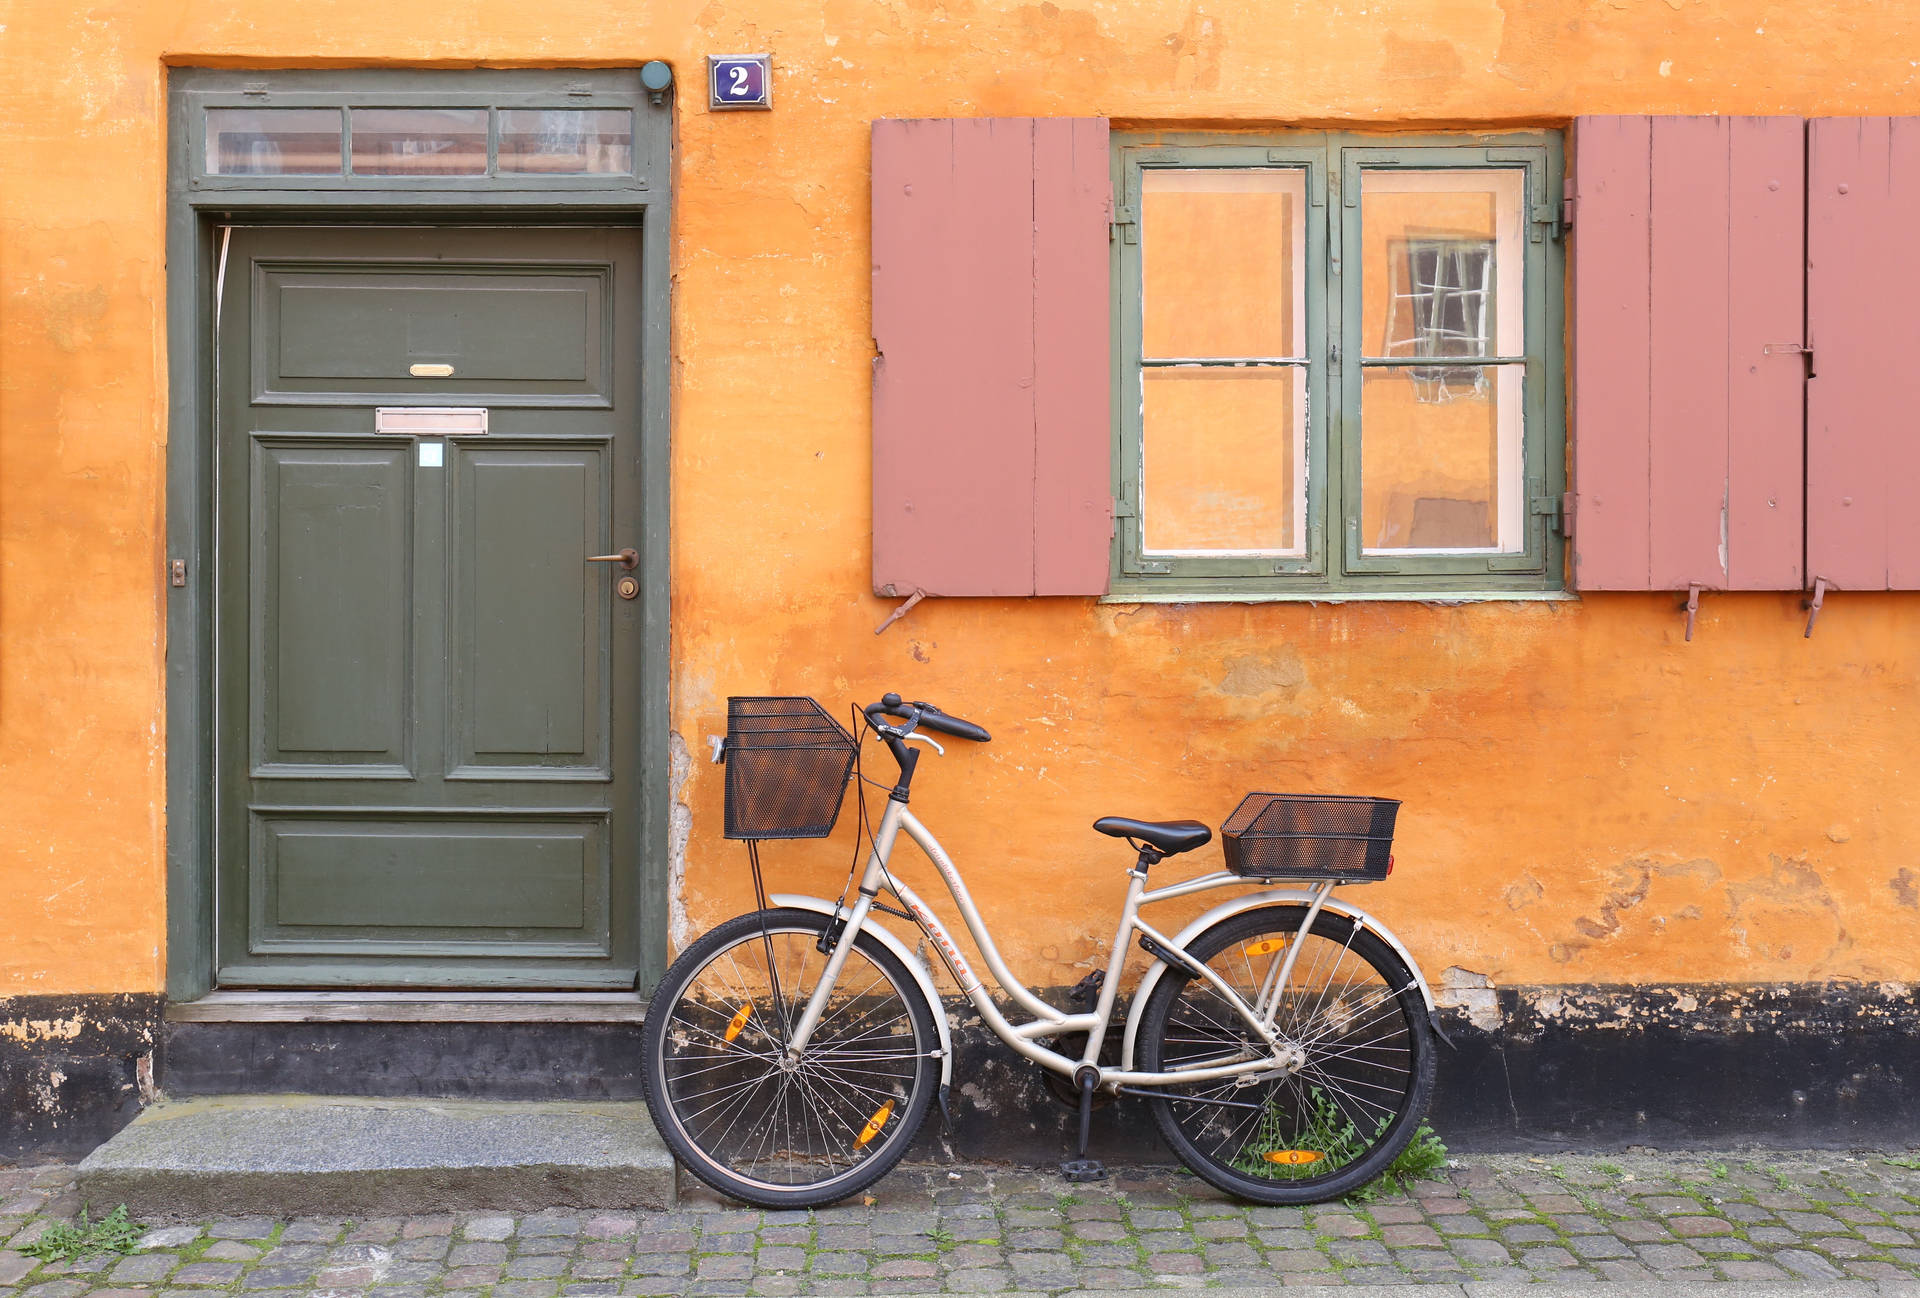 Japanese Bike In Orange Wall Background